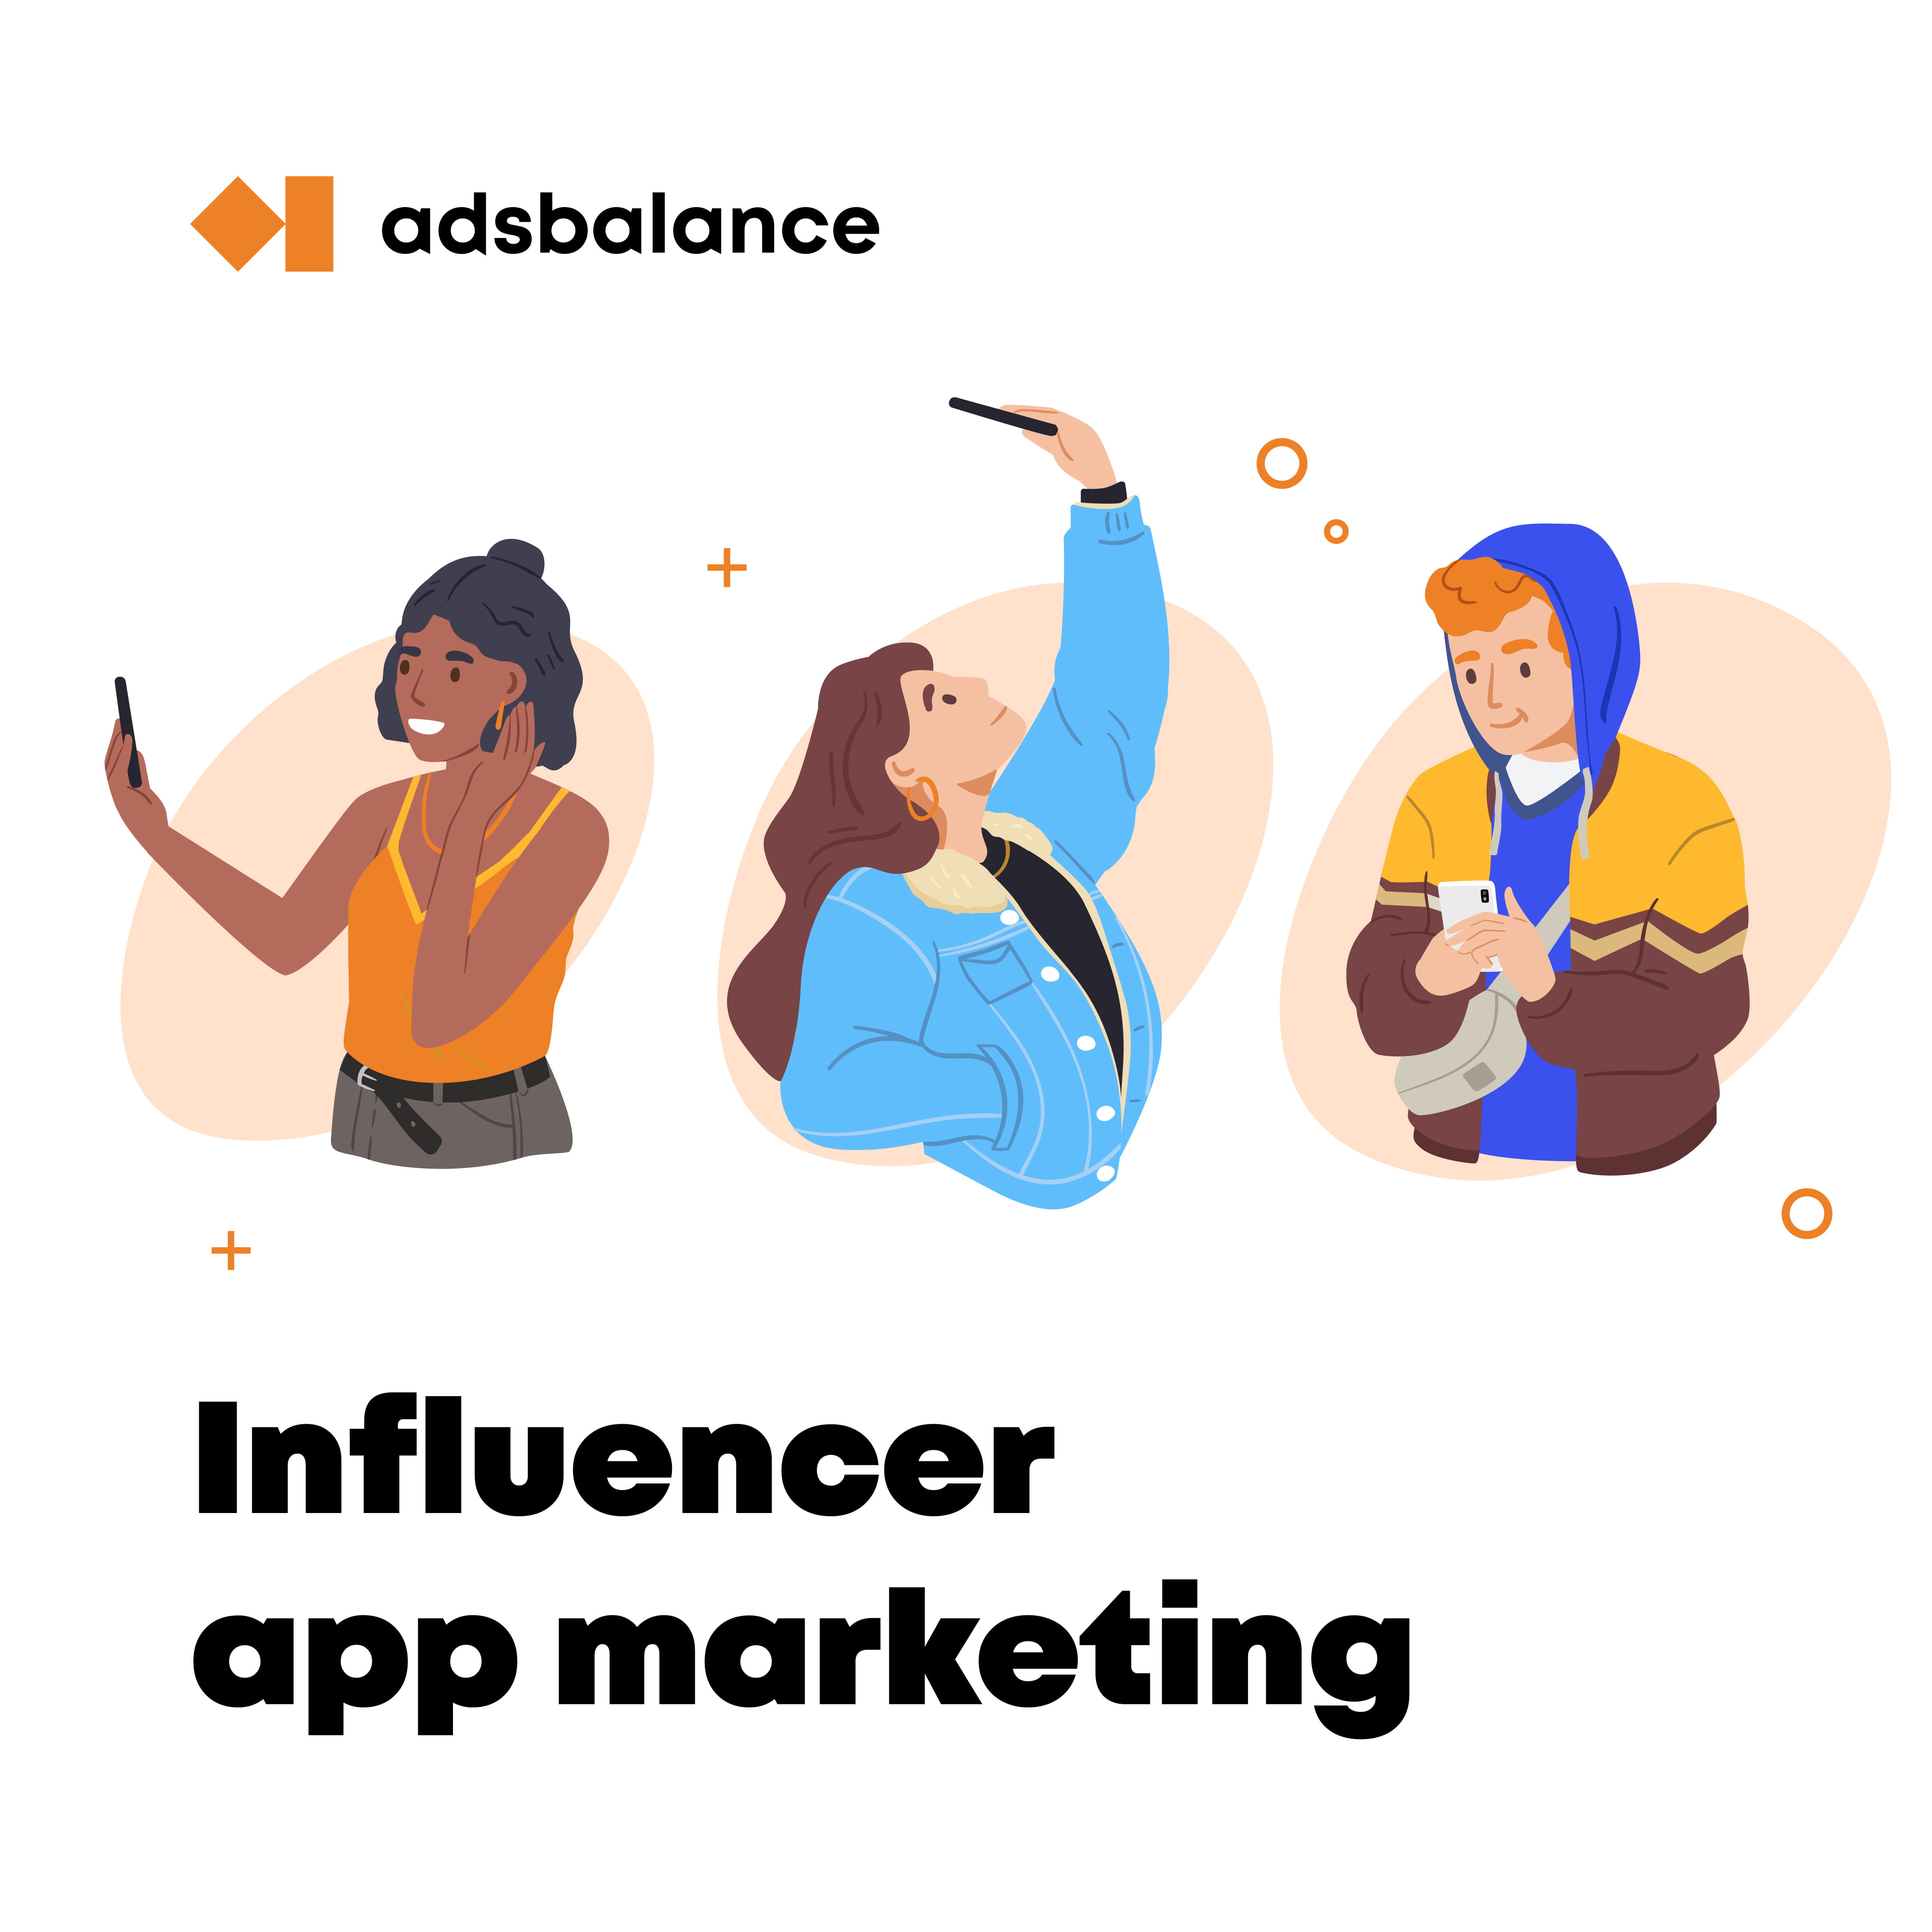 How to do influencer app marketing